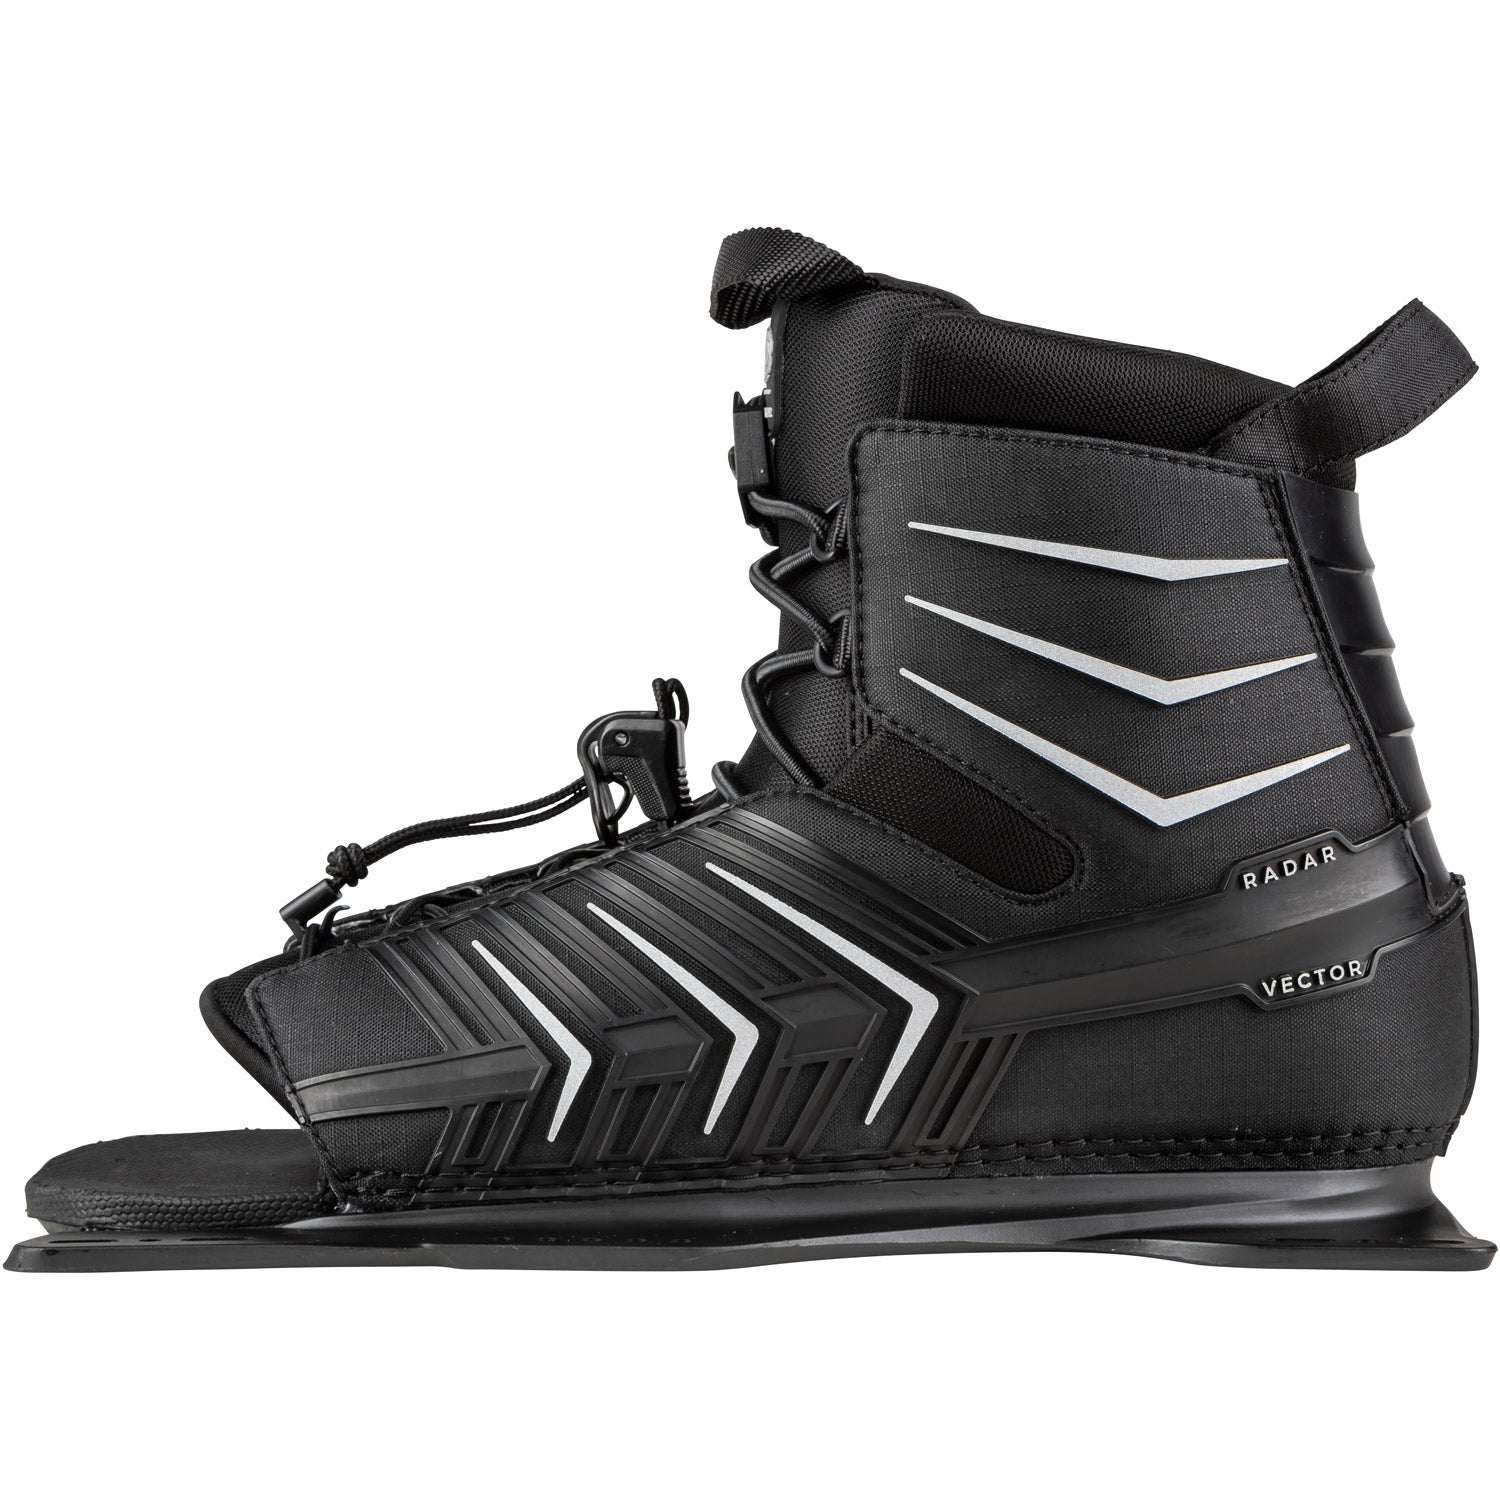 Vector Slalom Ski Boot